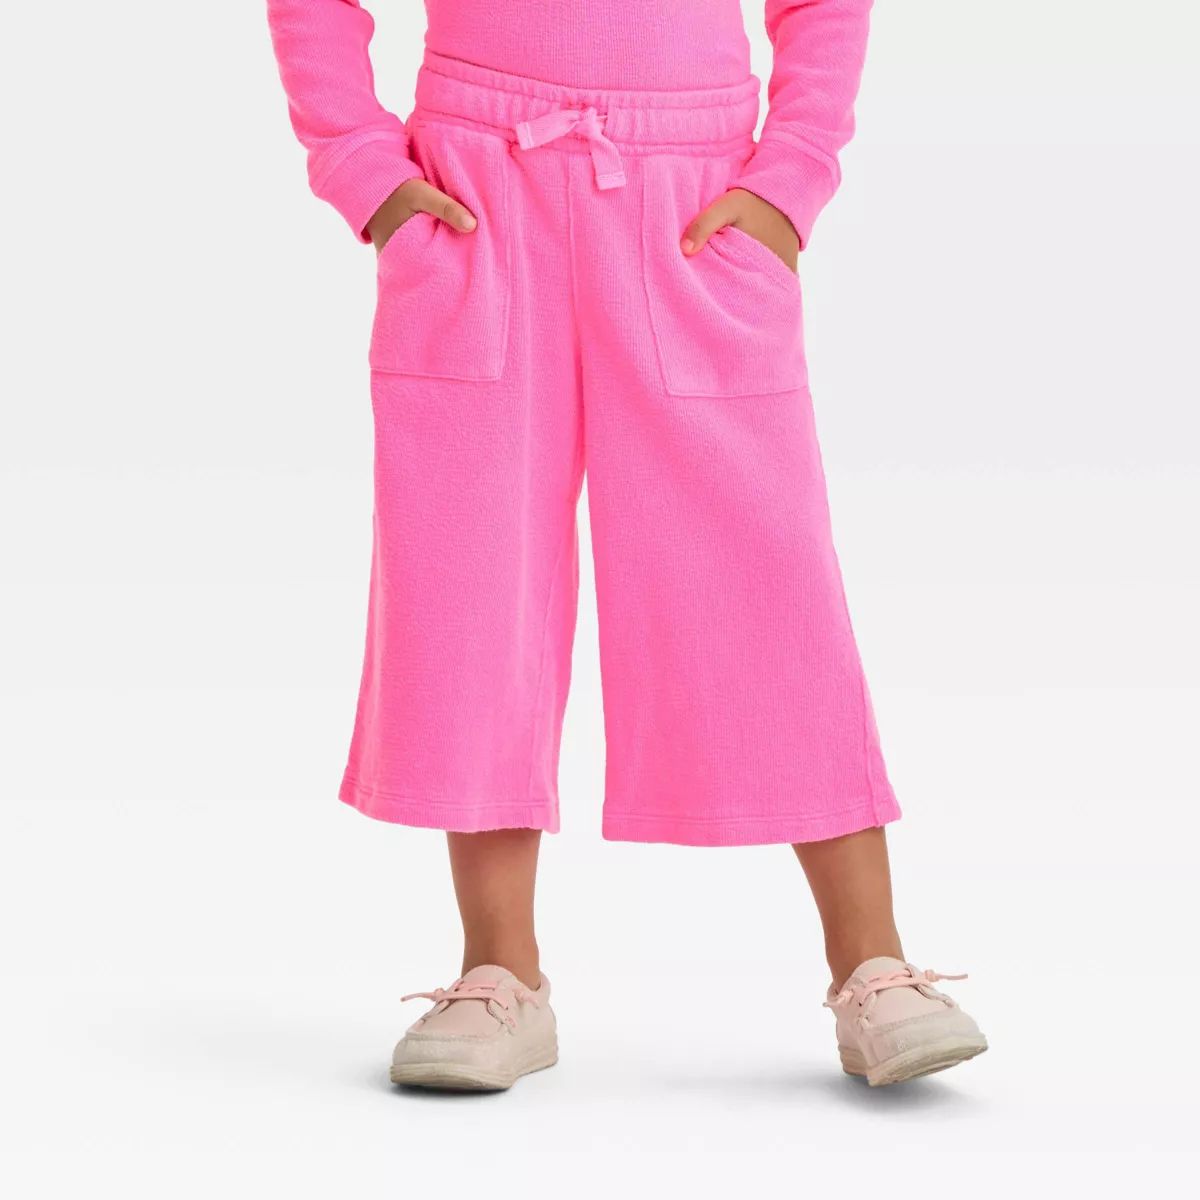 Toddler Girls' Pants - Cat & Jack™ Neon Pink 2T | Target